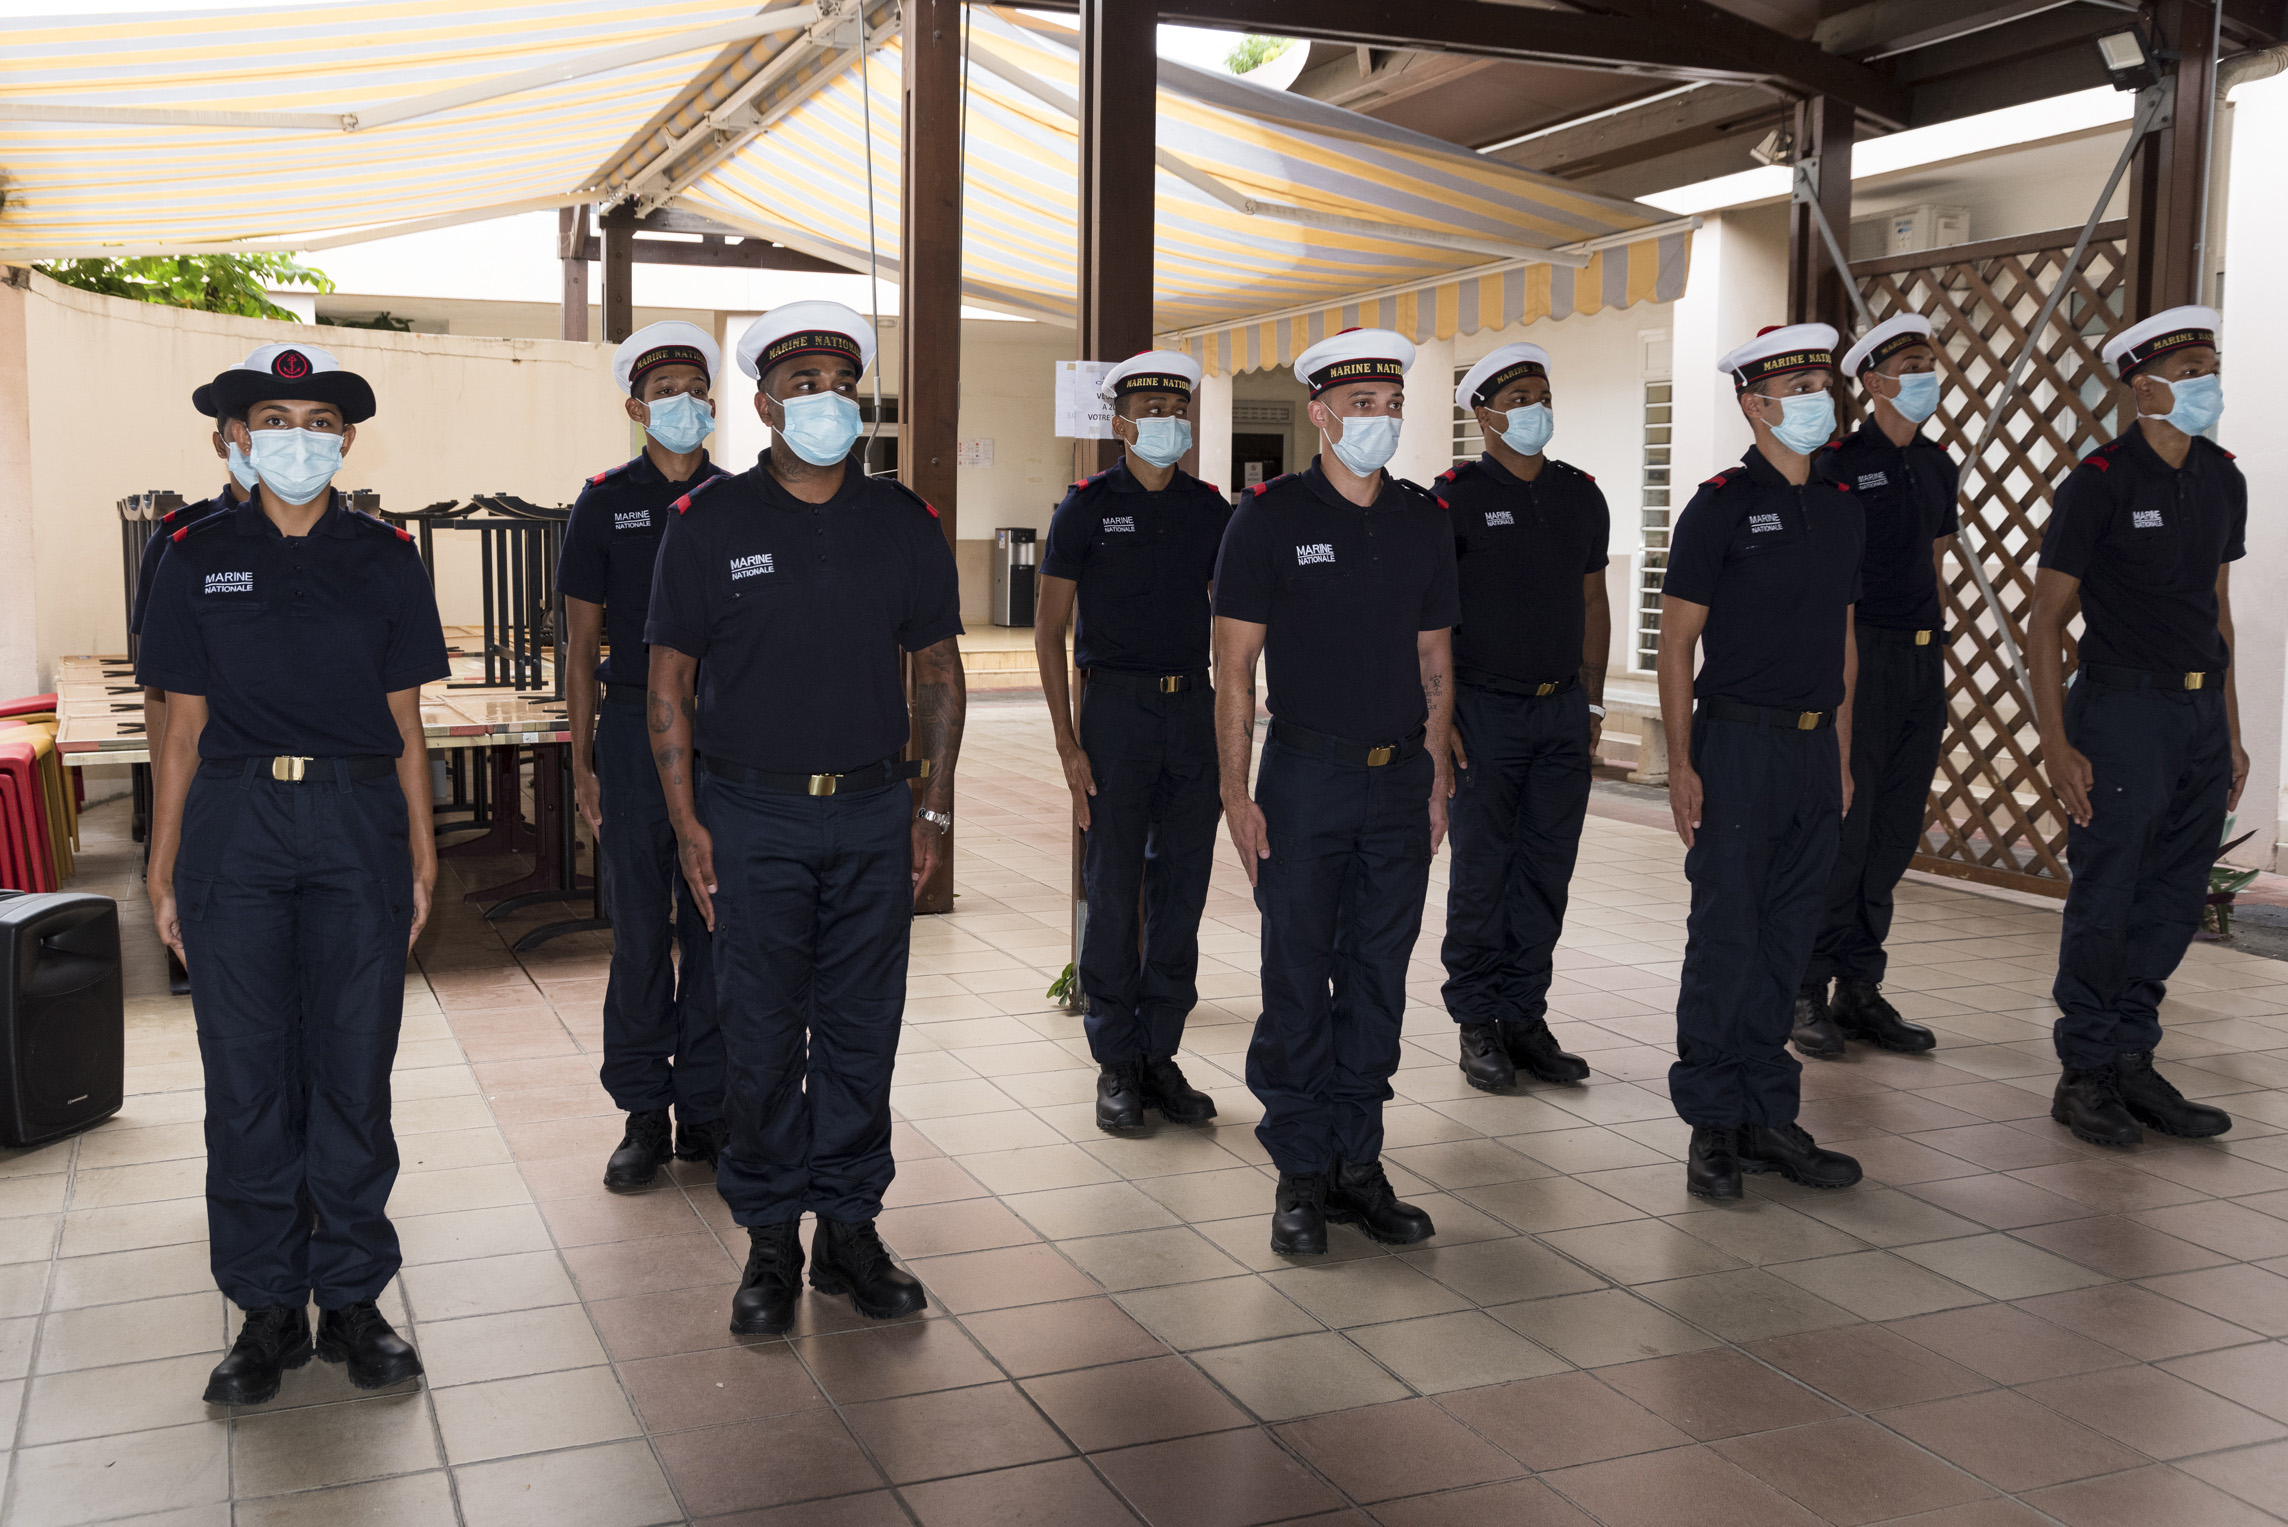 La Marine nationale incorpore 10 Réunionnais à la base navale du Port des Galets